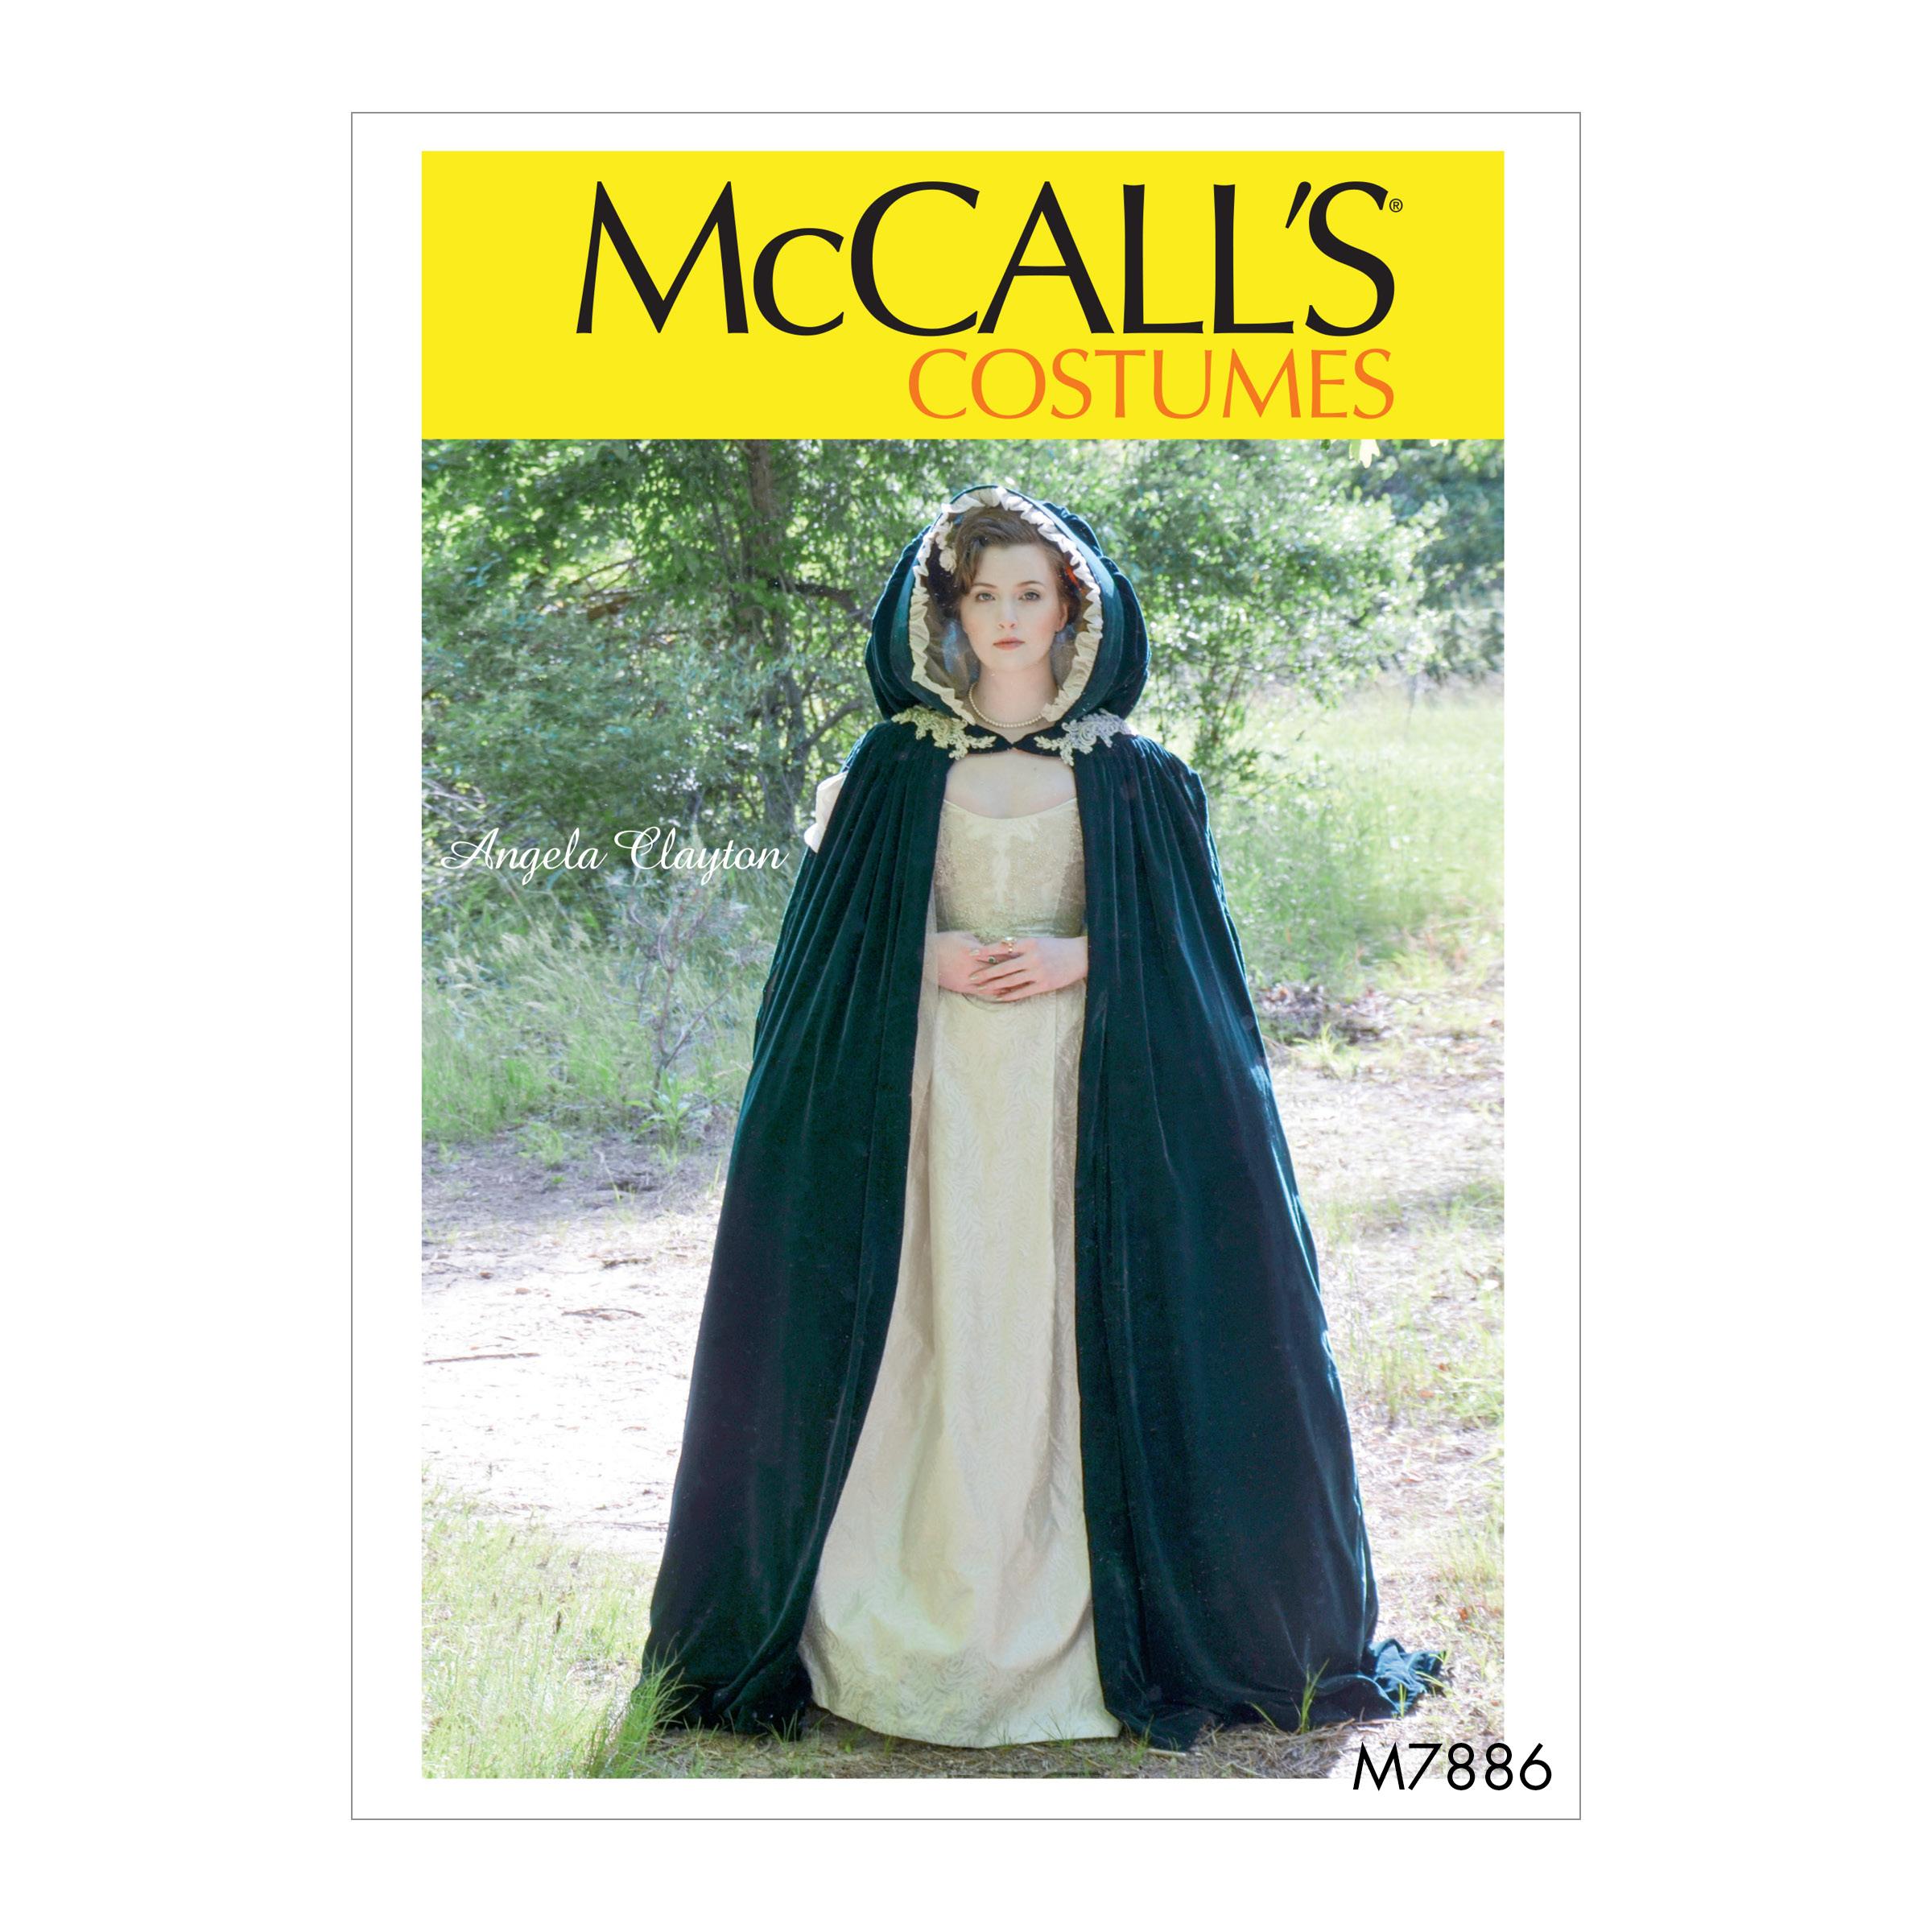 McCalls M7886 Costumes